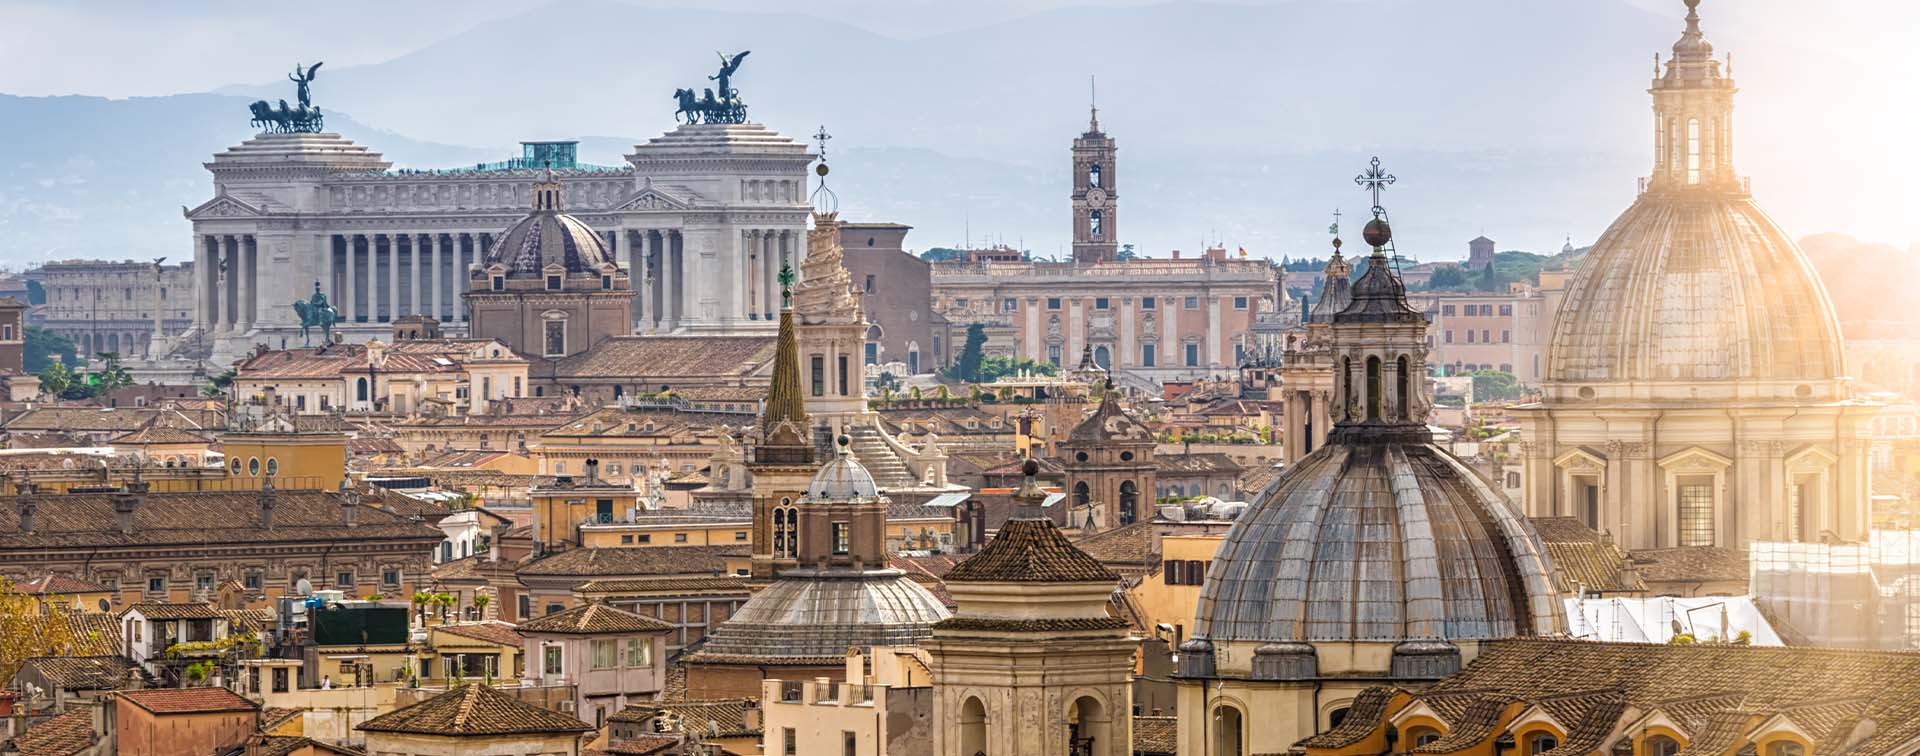 The Rome skyline